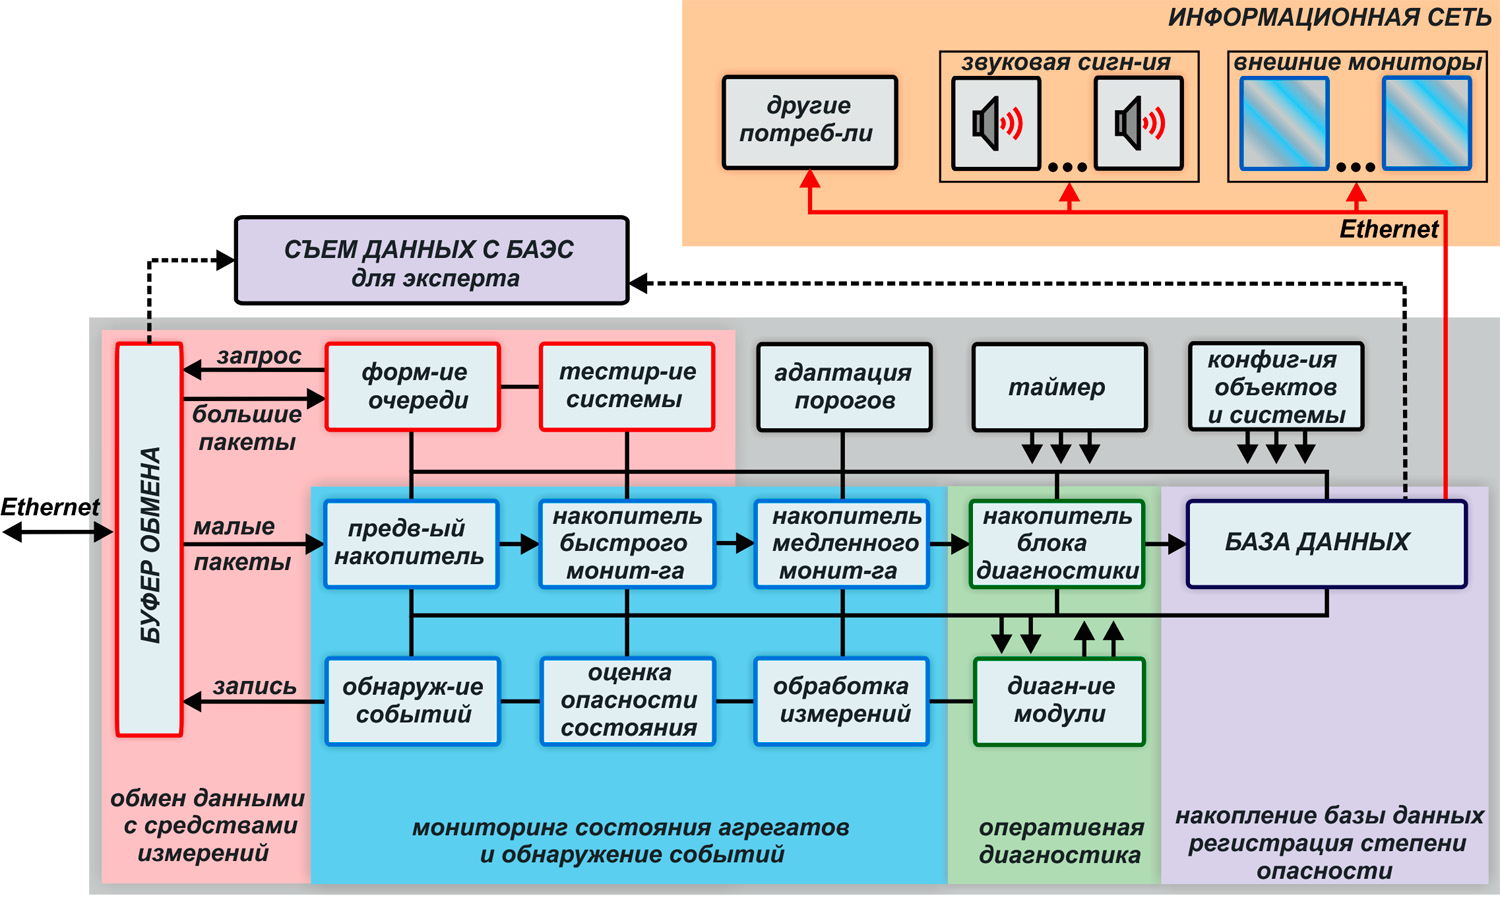 Структура диагностической программы ОДА